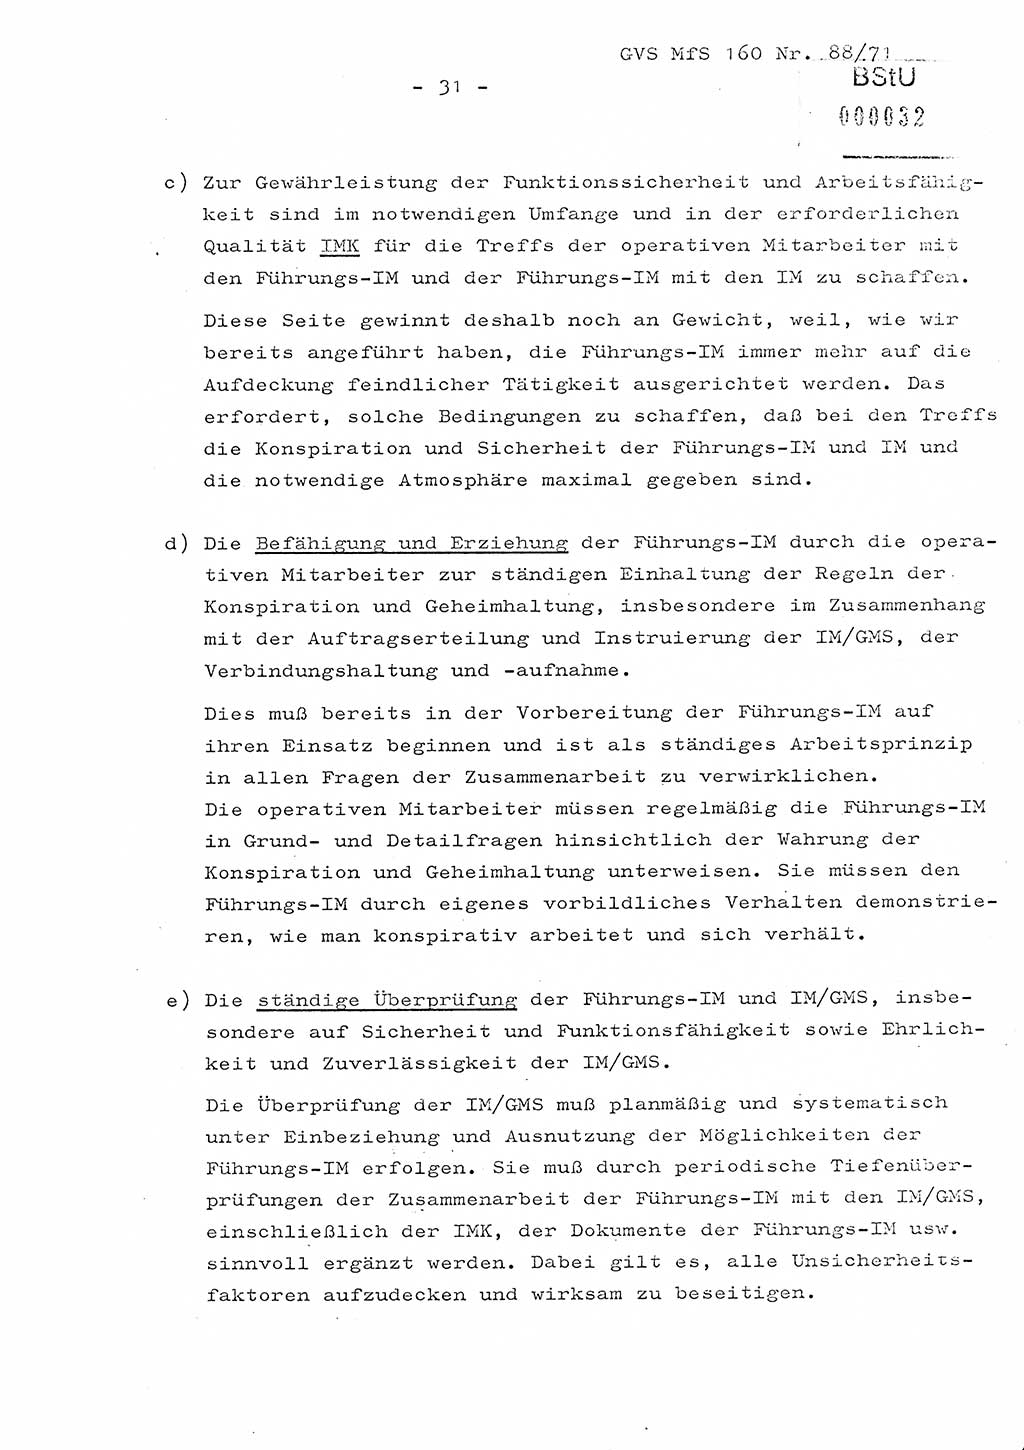 Dissertation Oberstleutnant Josef Schwarz (BV Schwerin), Major Fritz Amm (JHS), Hauptmann Peter Gräßler (JHS), Ministerium für Staatssicherheit (MfS) [Deutsche Demokratische Republik (DDR)], Juristische Hochschule (JHS), Geheime Verschlußsache (GVS) 160-88/71, Potsdam 1972, Seite 31 (Diss. MfS DDR JHS GVS 160-88/71 1972, S. 31)